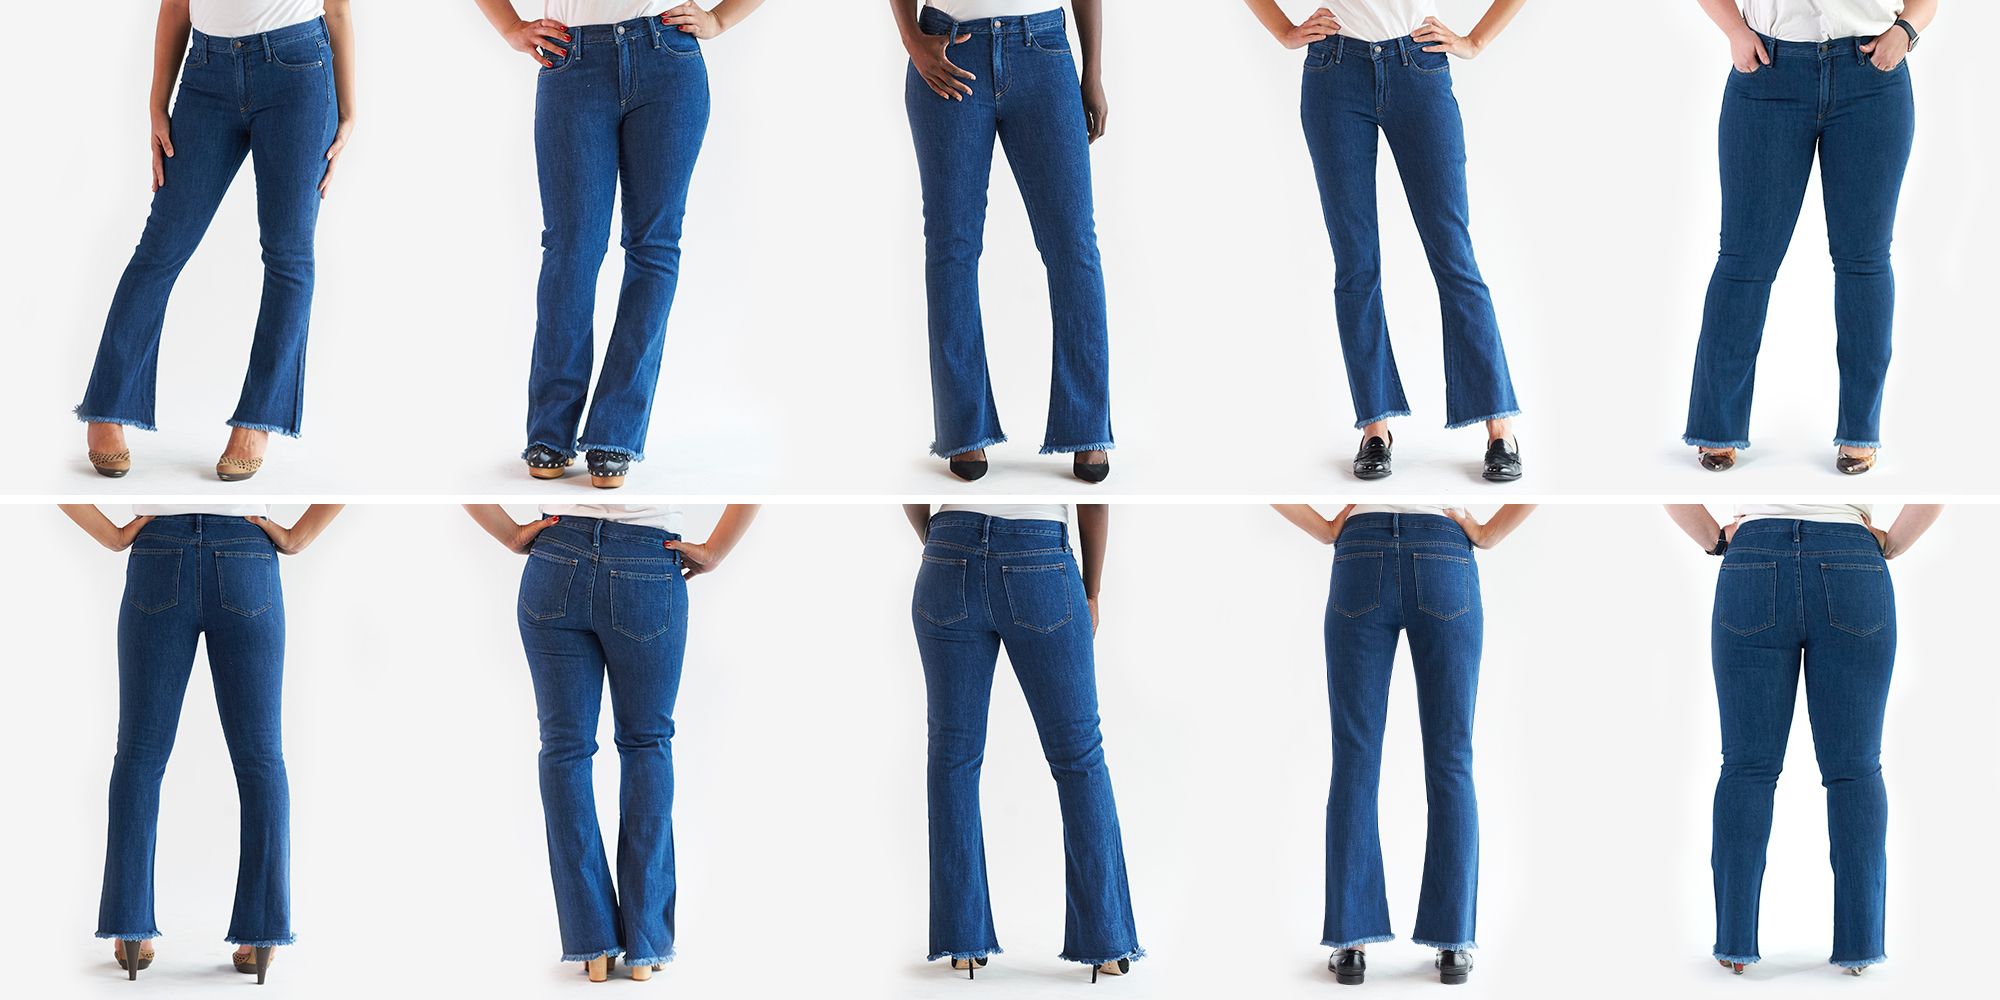 Women's Jeans | Black, Blue & Low Rise Denims | ASOS